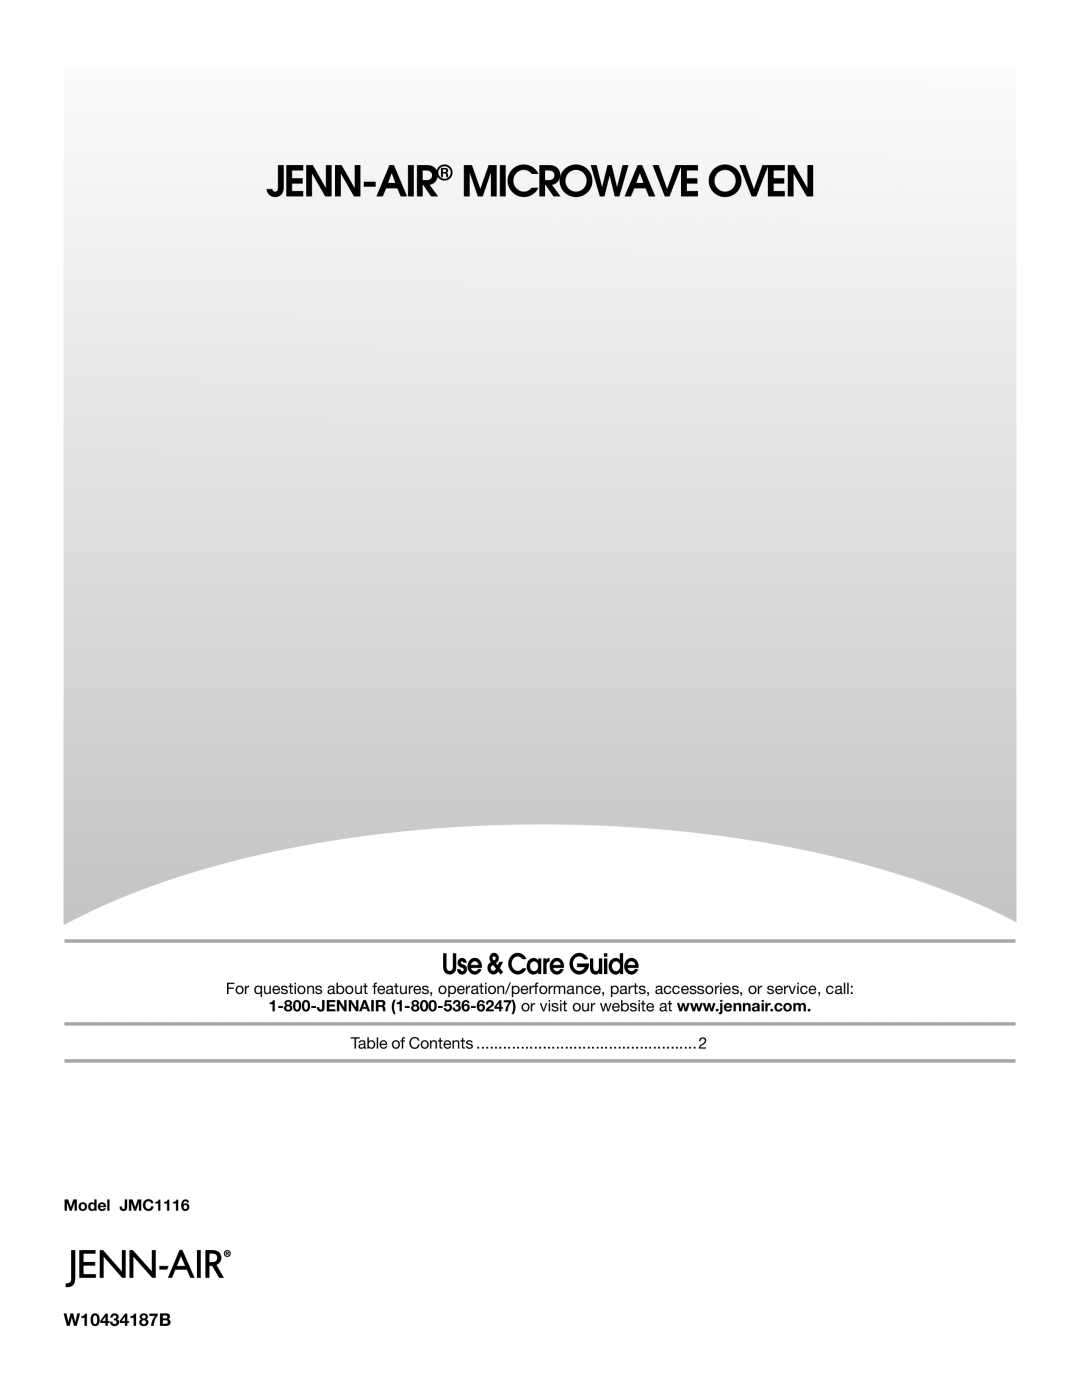 Jenn-Air manual Use & Care Guide, Jenn-Air Microwave Oven, Model JMC1116 